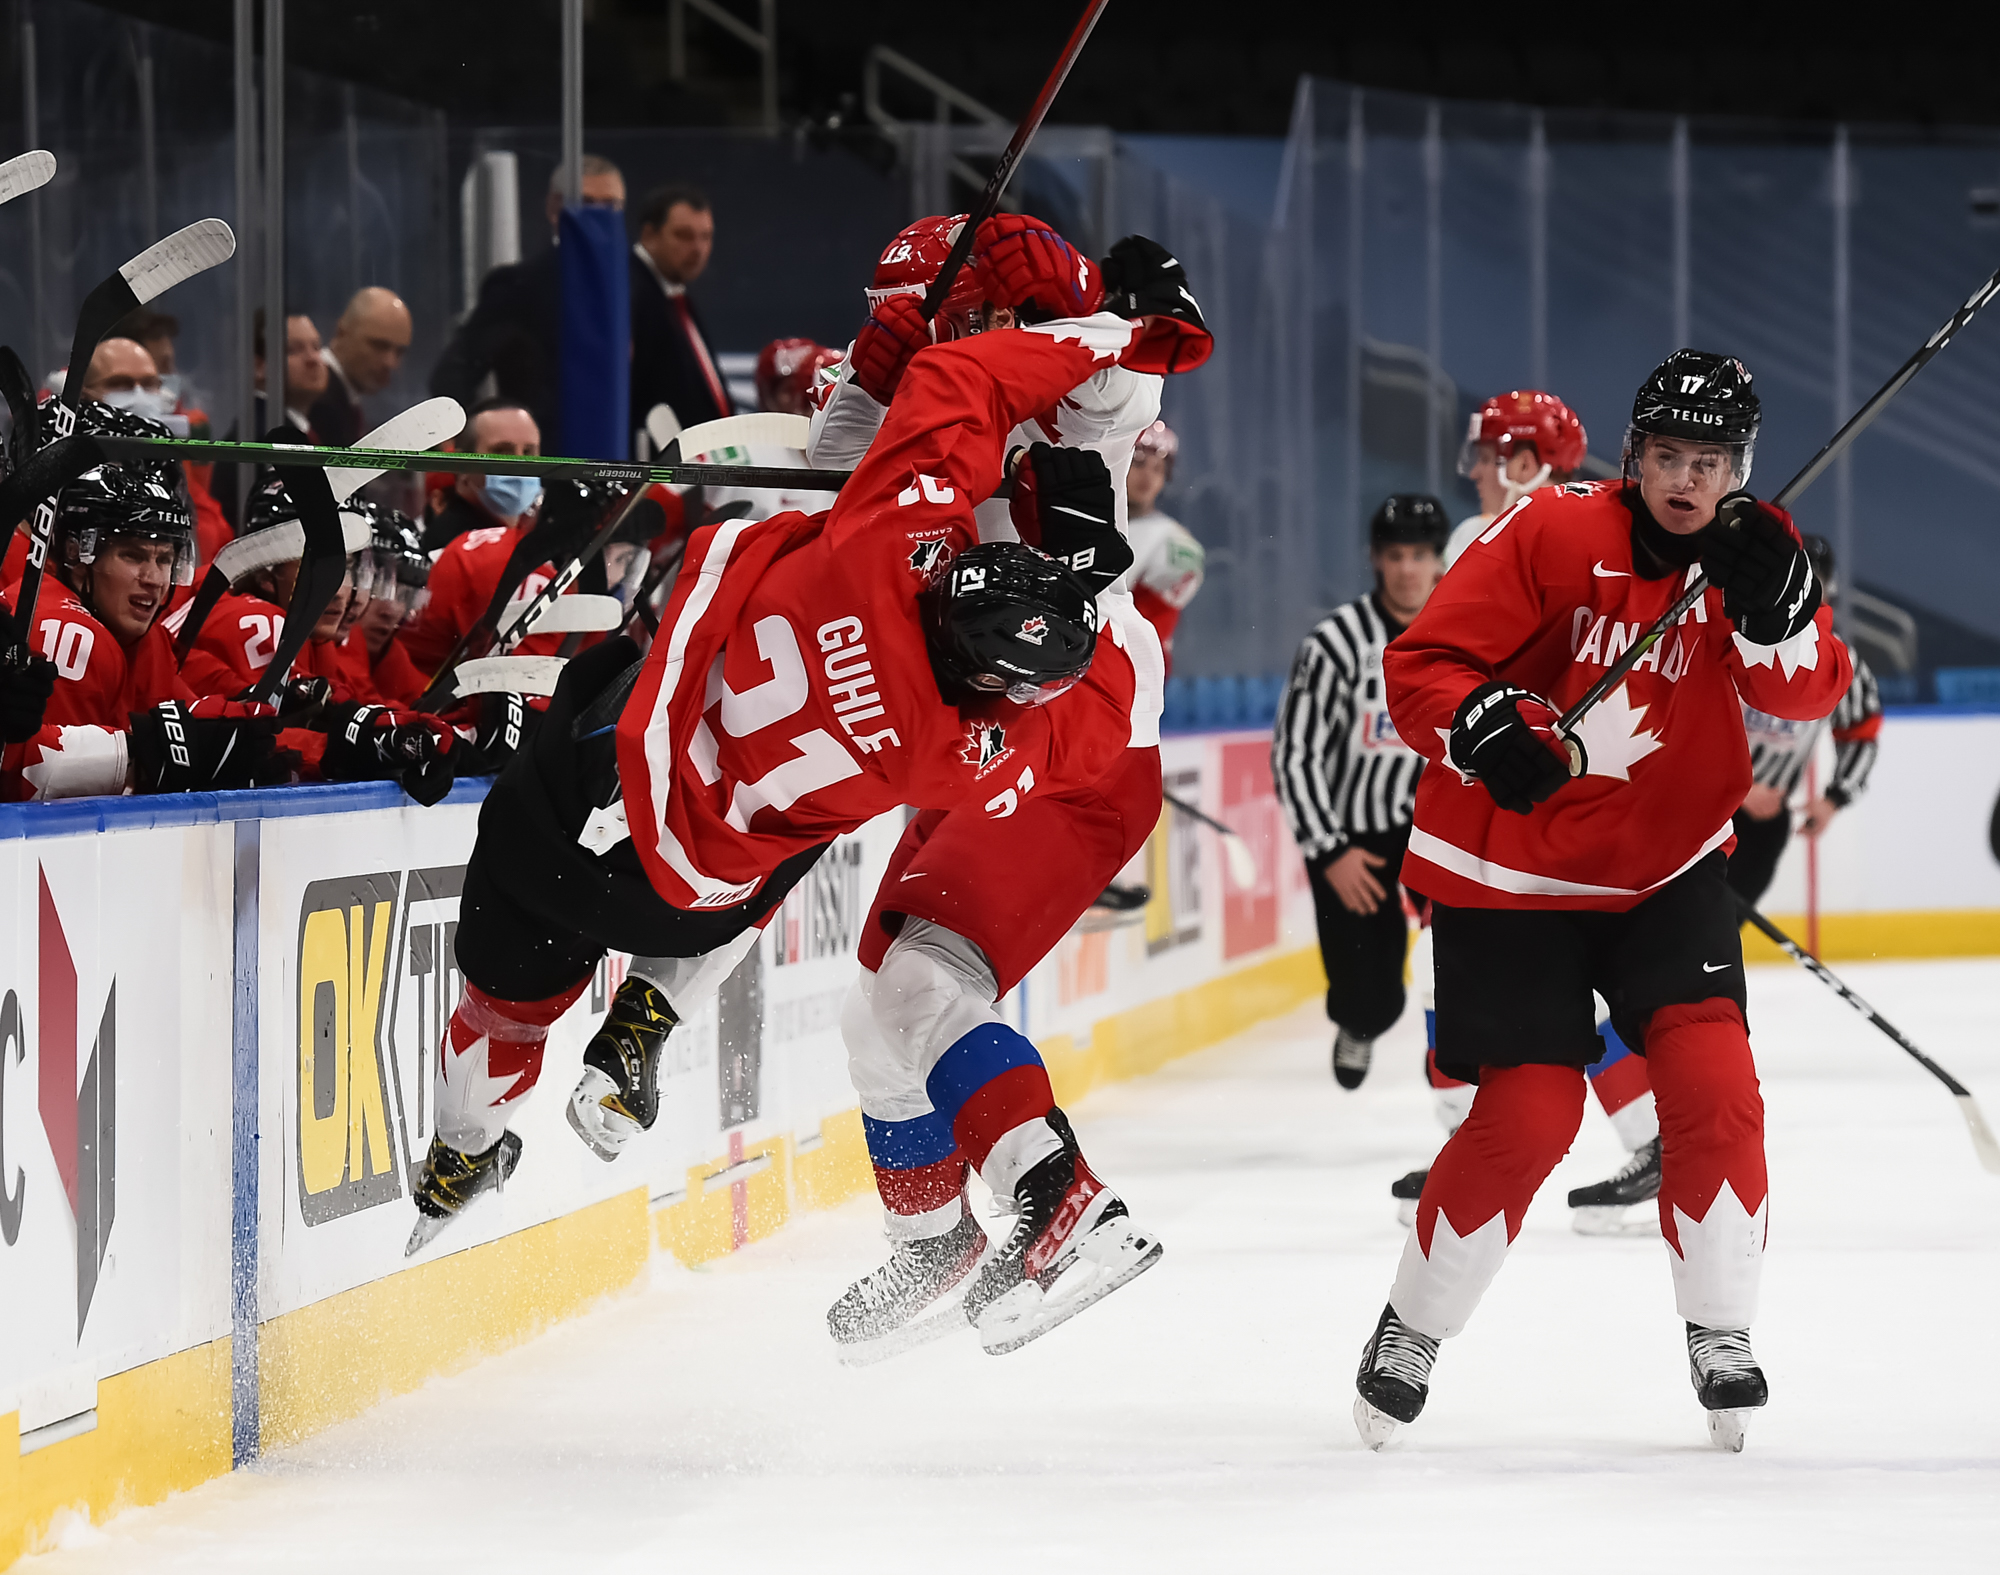 IIHF Canada rolls into gold